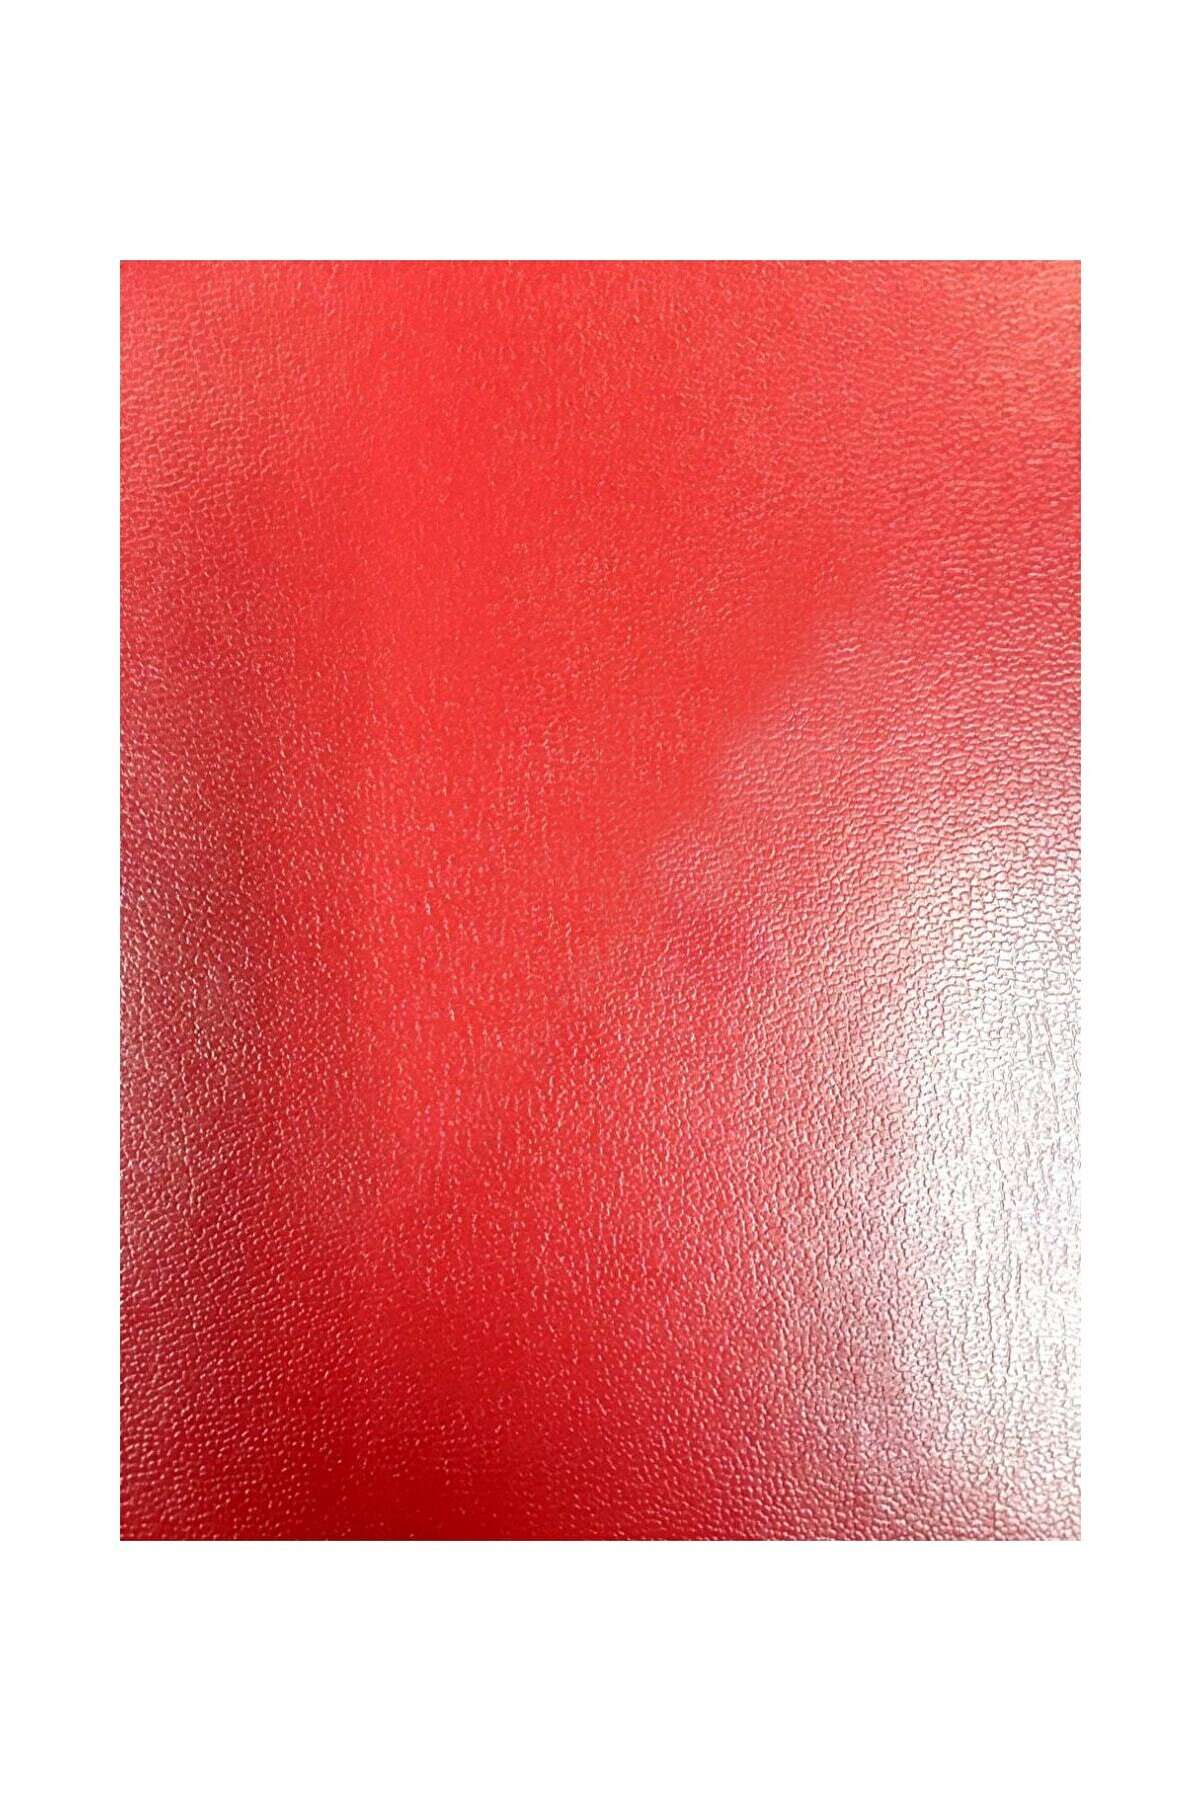 FIXALL ADHESIVE PRODUCTS Yapışkanlı Gerçek Suni Deri 45x100 Cm Renk Seçenekli Kırmızı